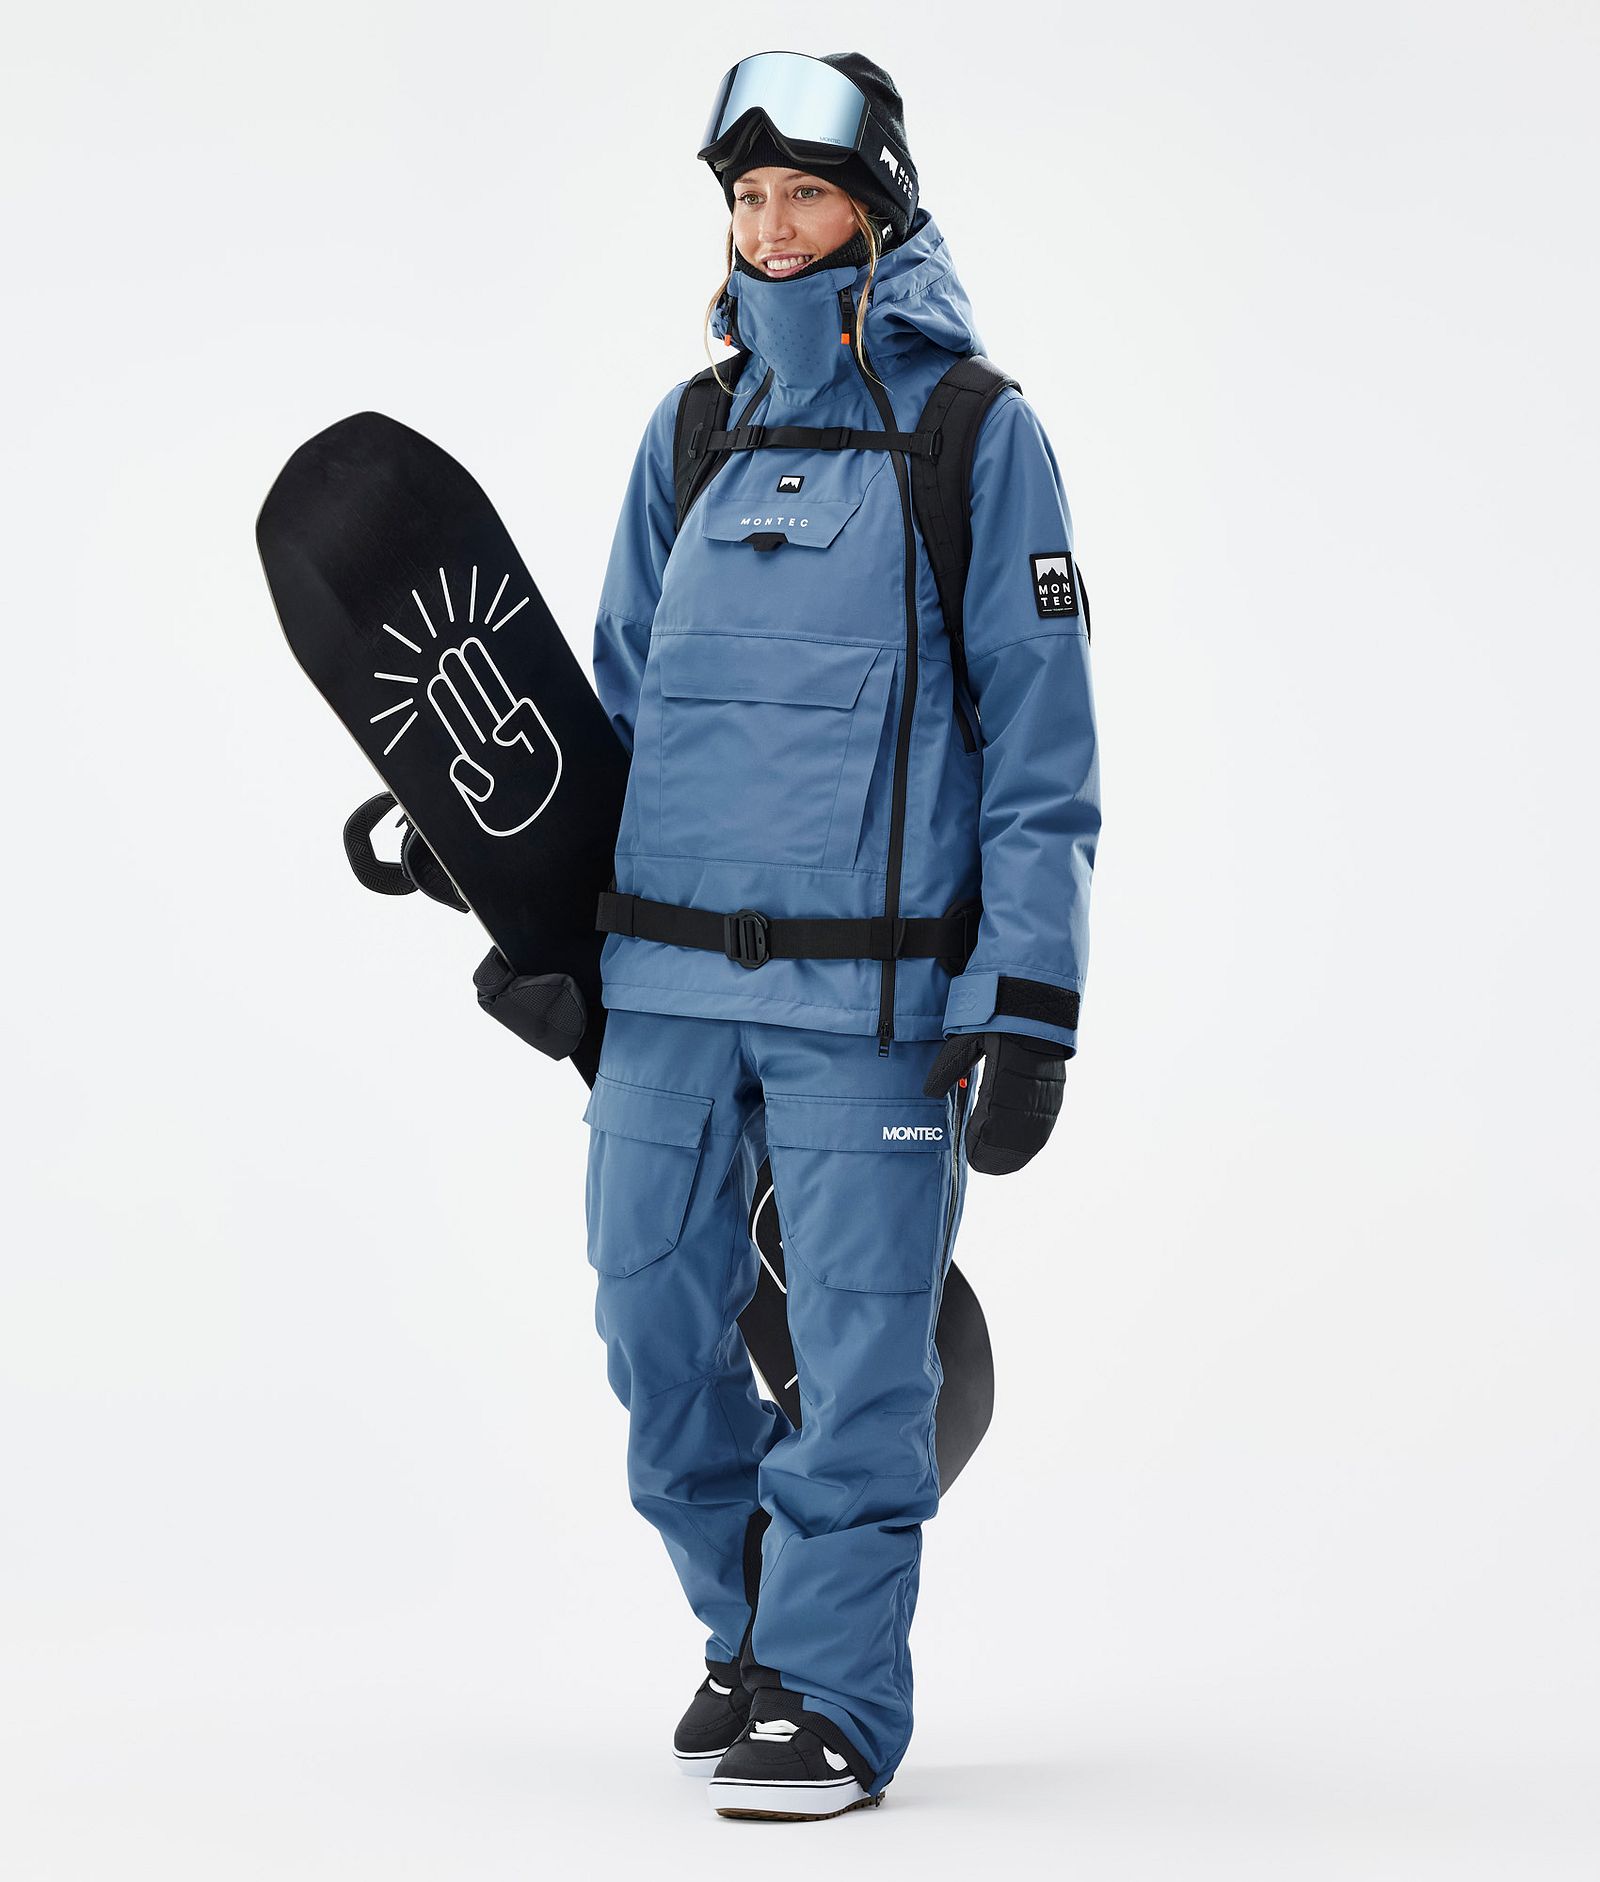 Doom W Snowboard Outfit Women Blue Steel